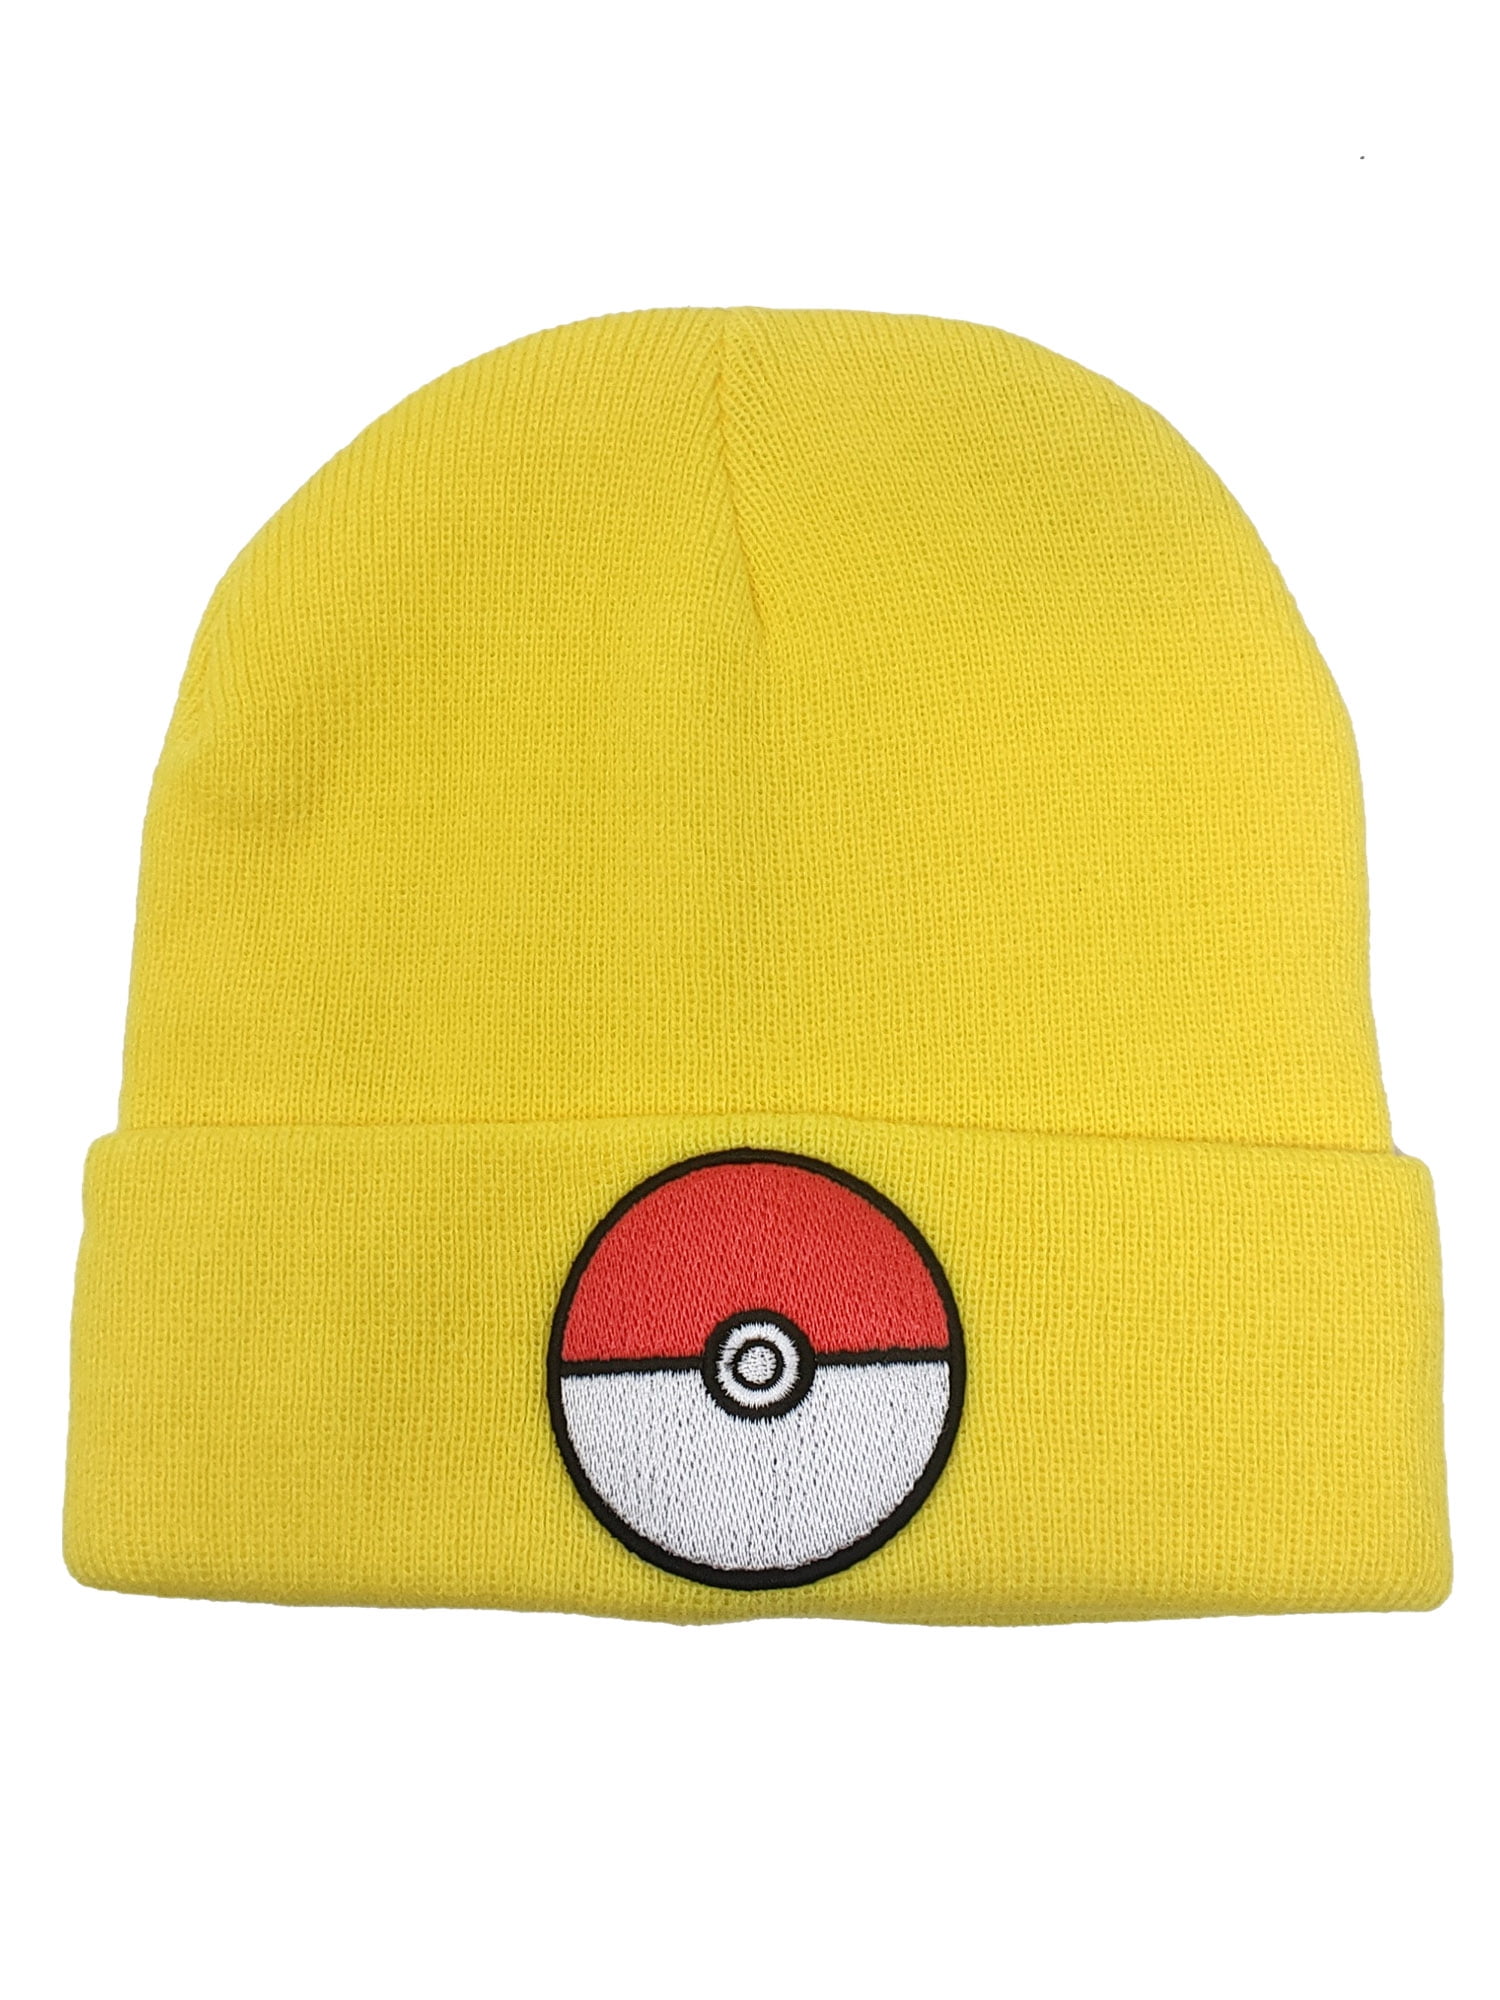 Bioworld Pokemon Pokeball Yellow Cuff Beanie Winter Hat 